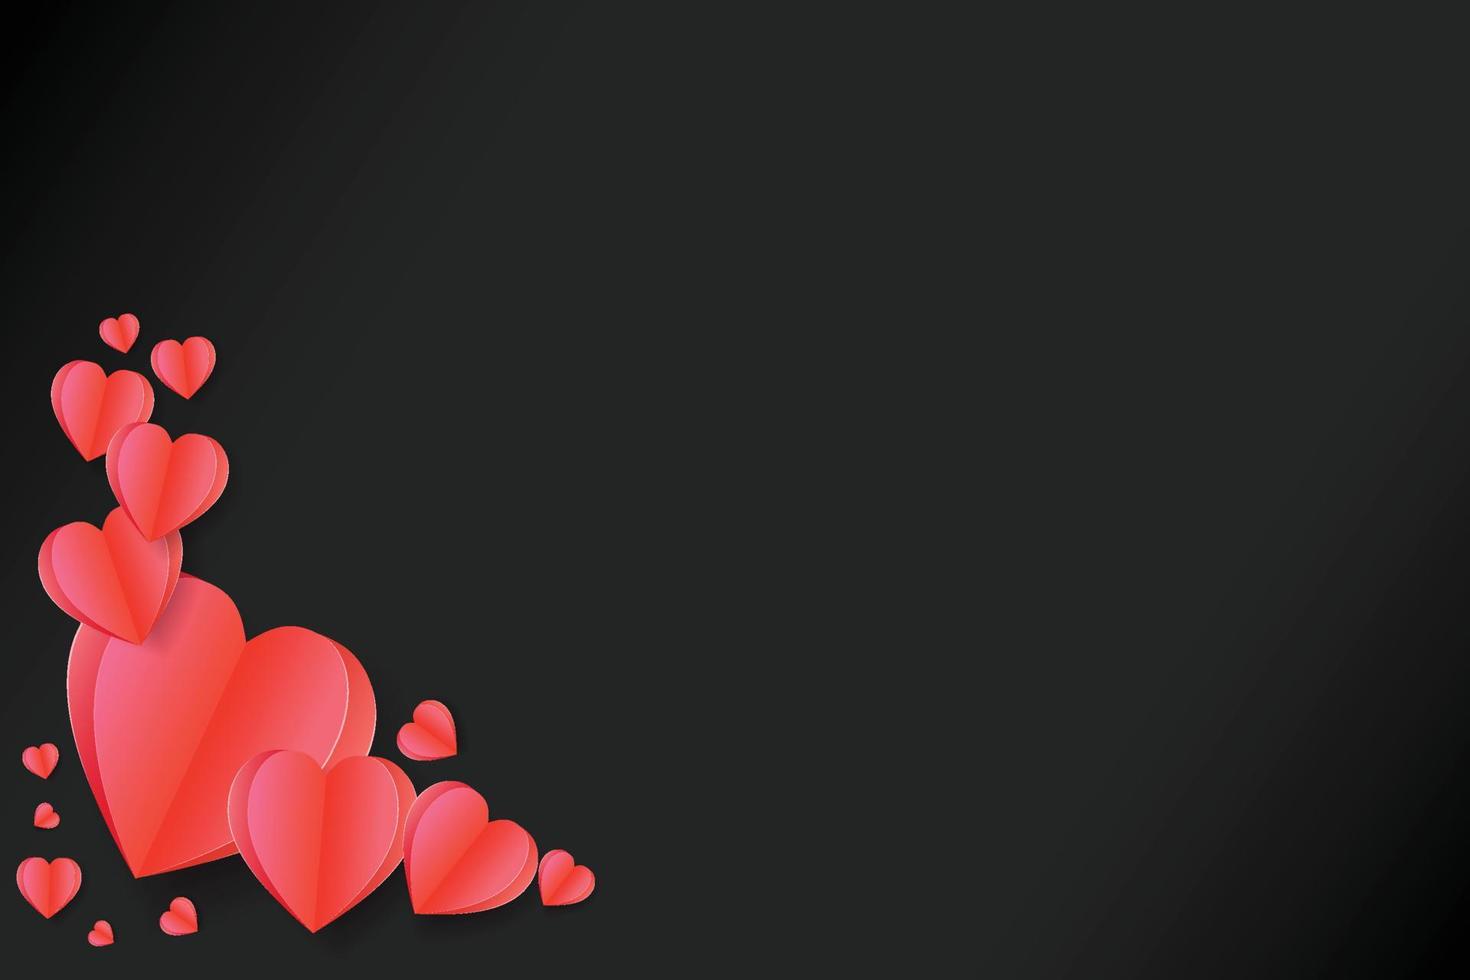 Papier schnitt rote Herzform auf schwarzem Hintergrund, Illustration für Valentinstag oder Liebestag, Vektorgrußkarte. vektor